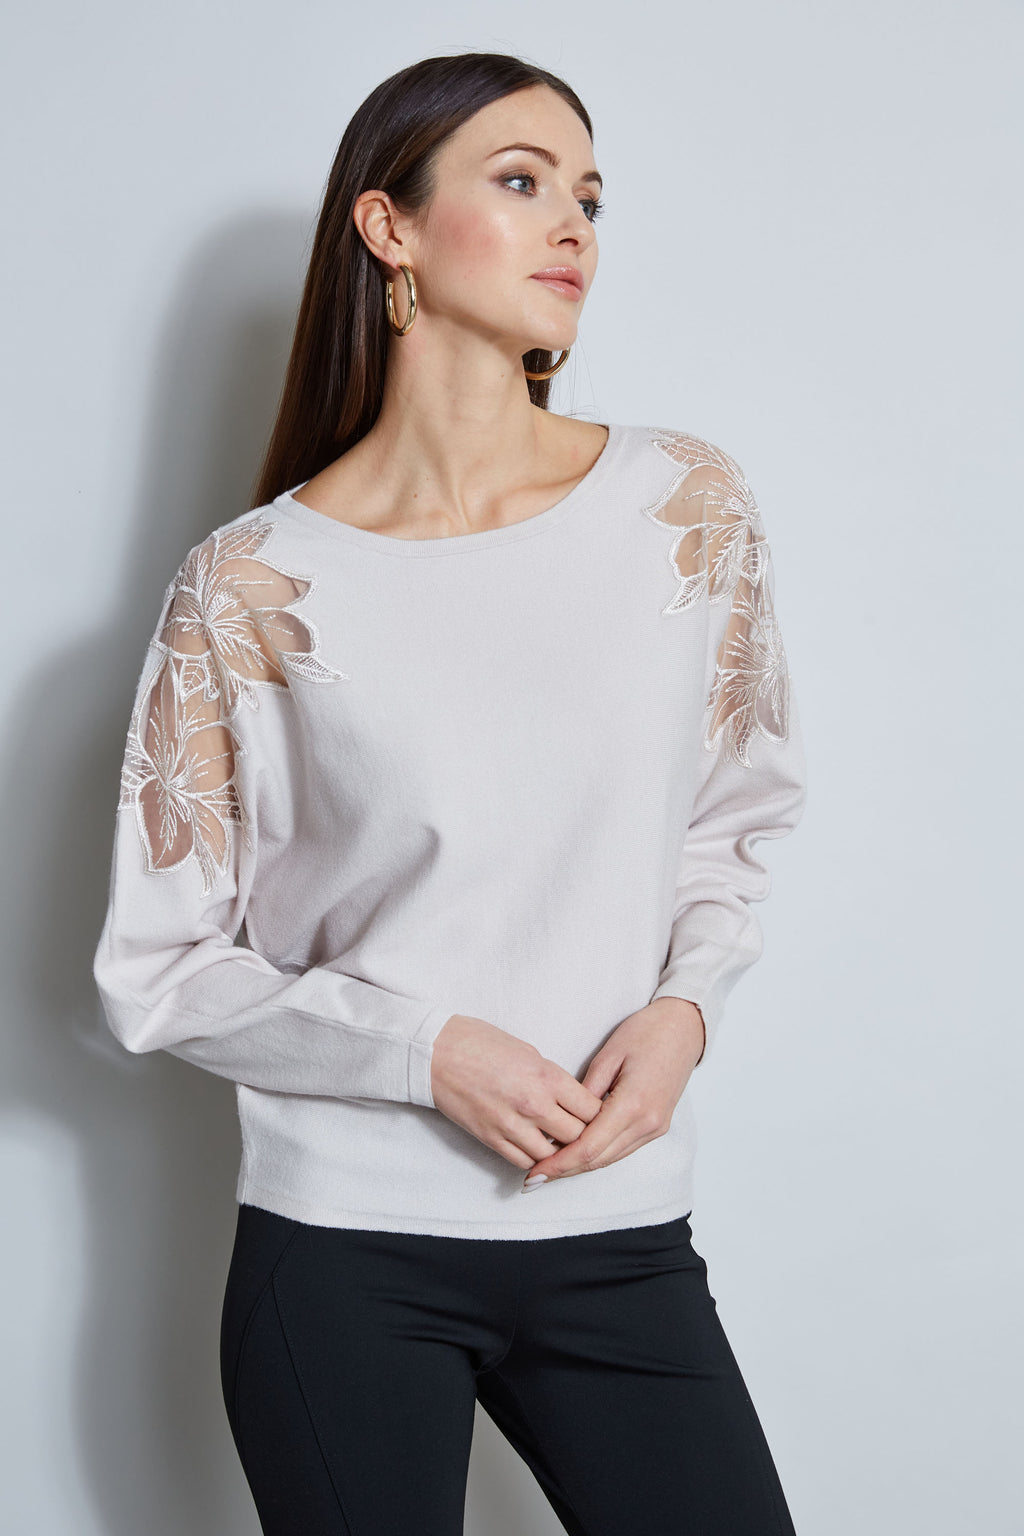 T-Tahari Floral Mesh Shoulder Sweater – Elie Tahari